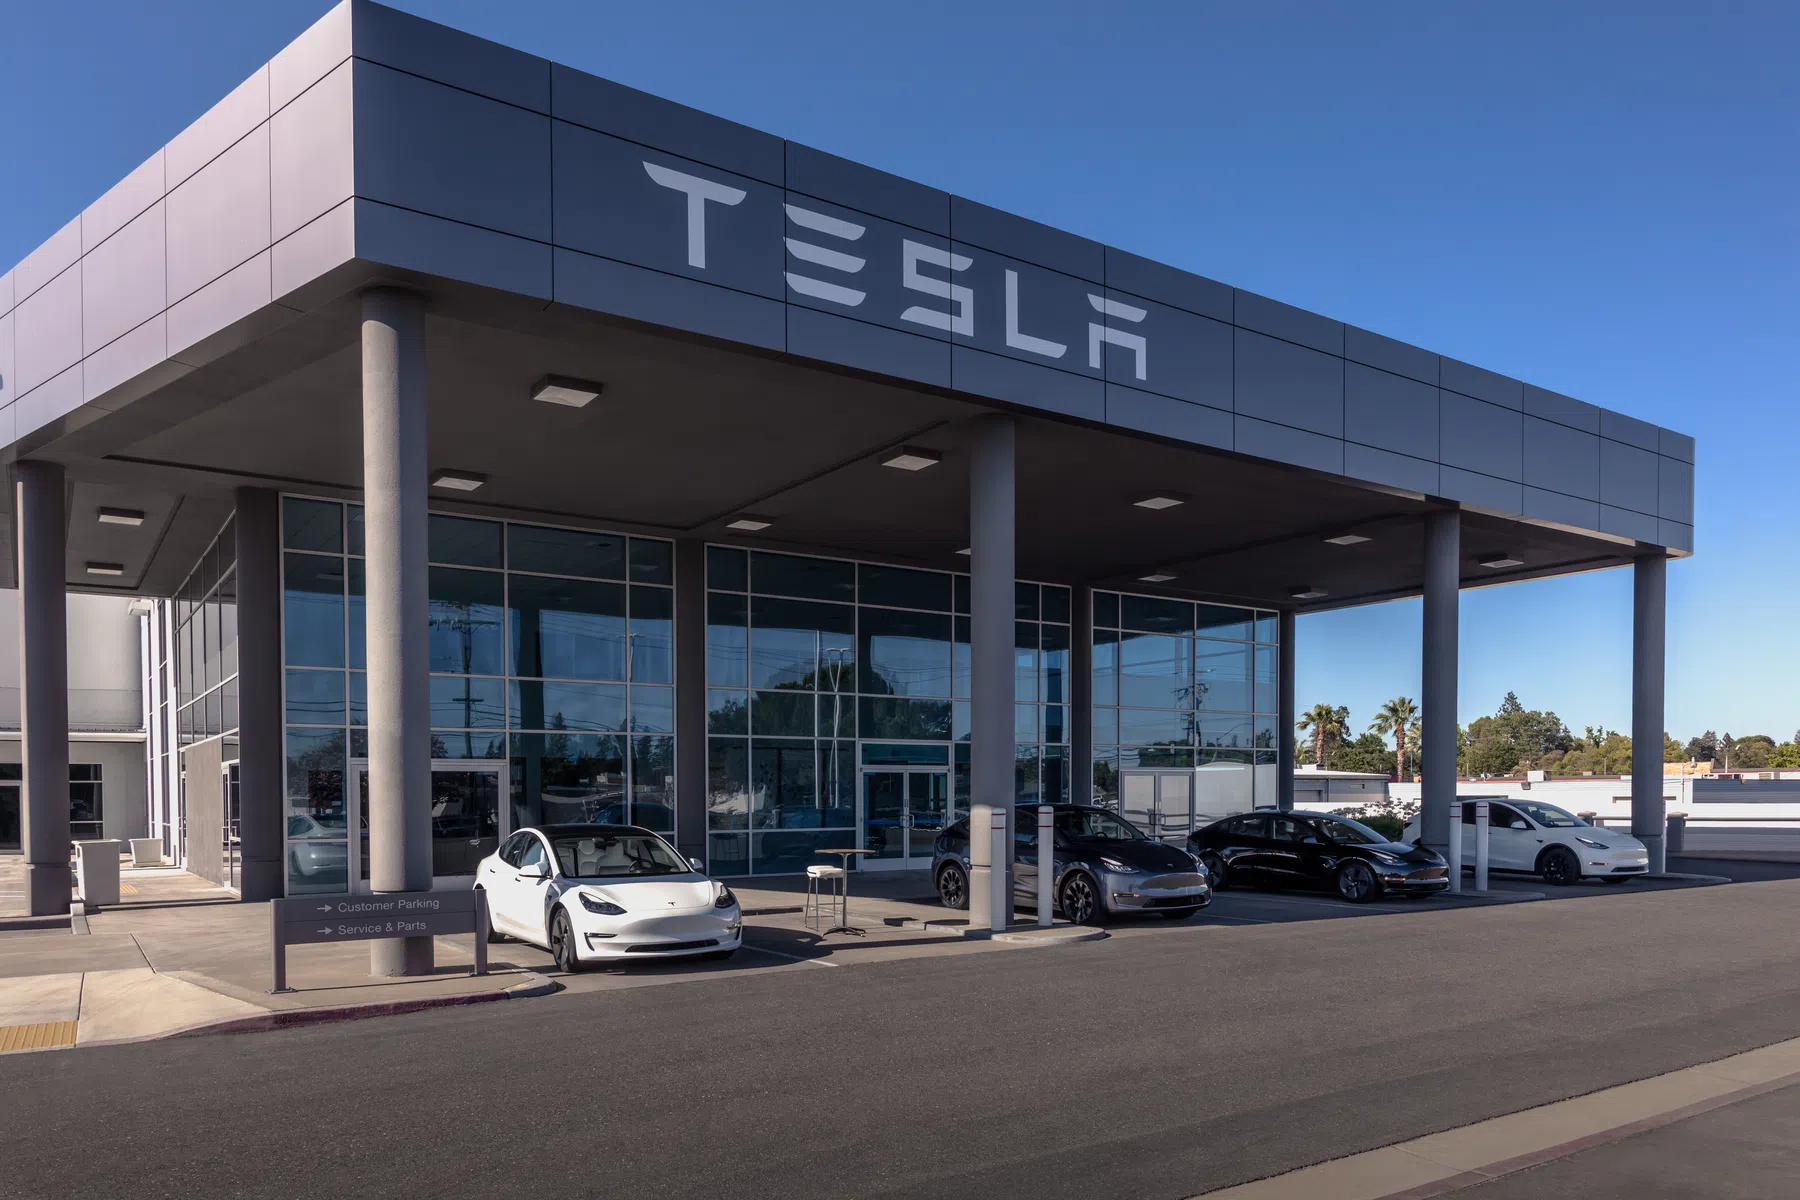 Tweedehands Tesla kopen? Dit autoverhuurbedrijf verkoopt 30.000 elektrische auto’s